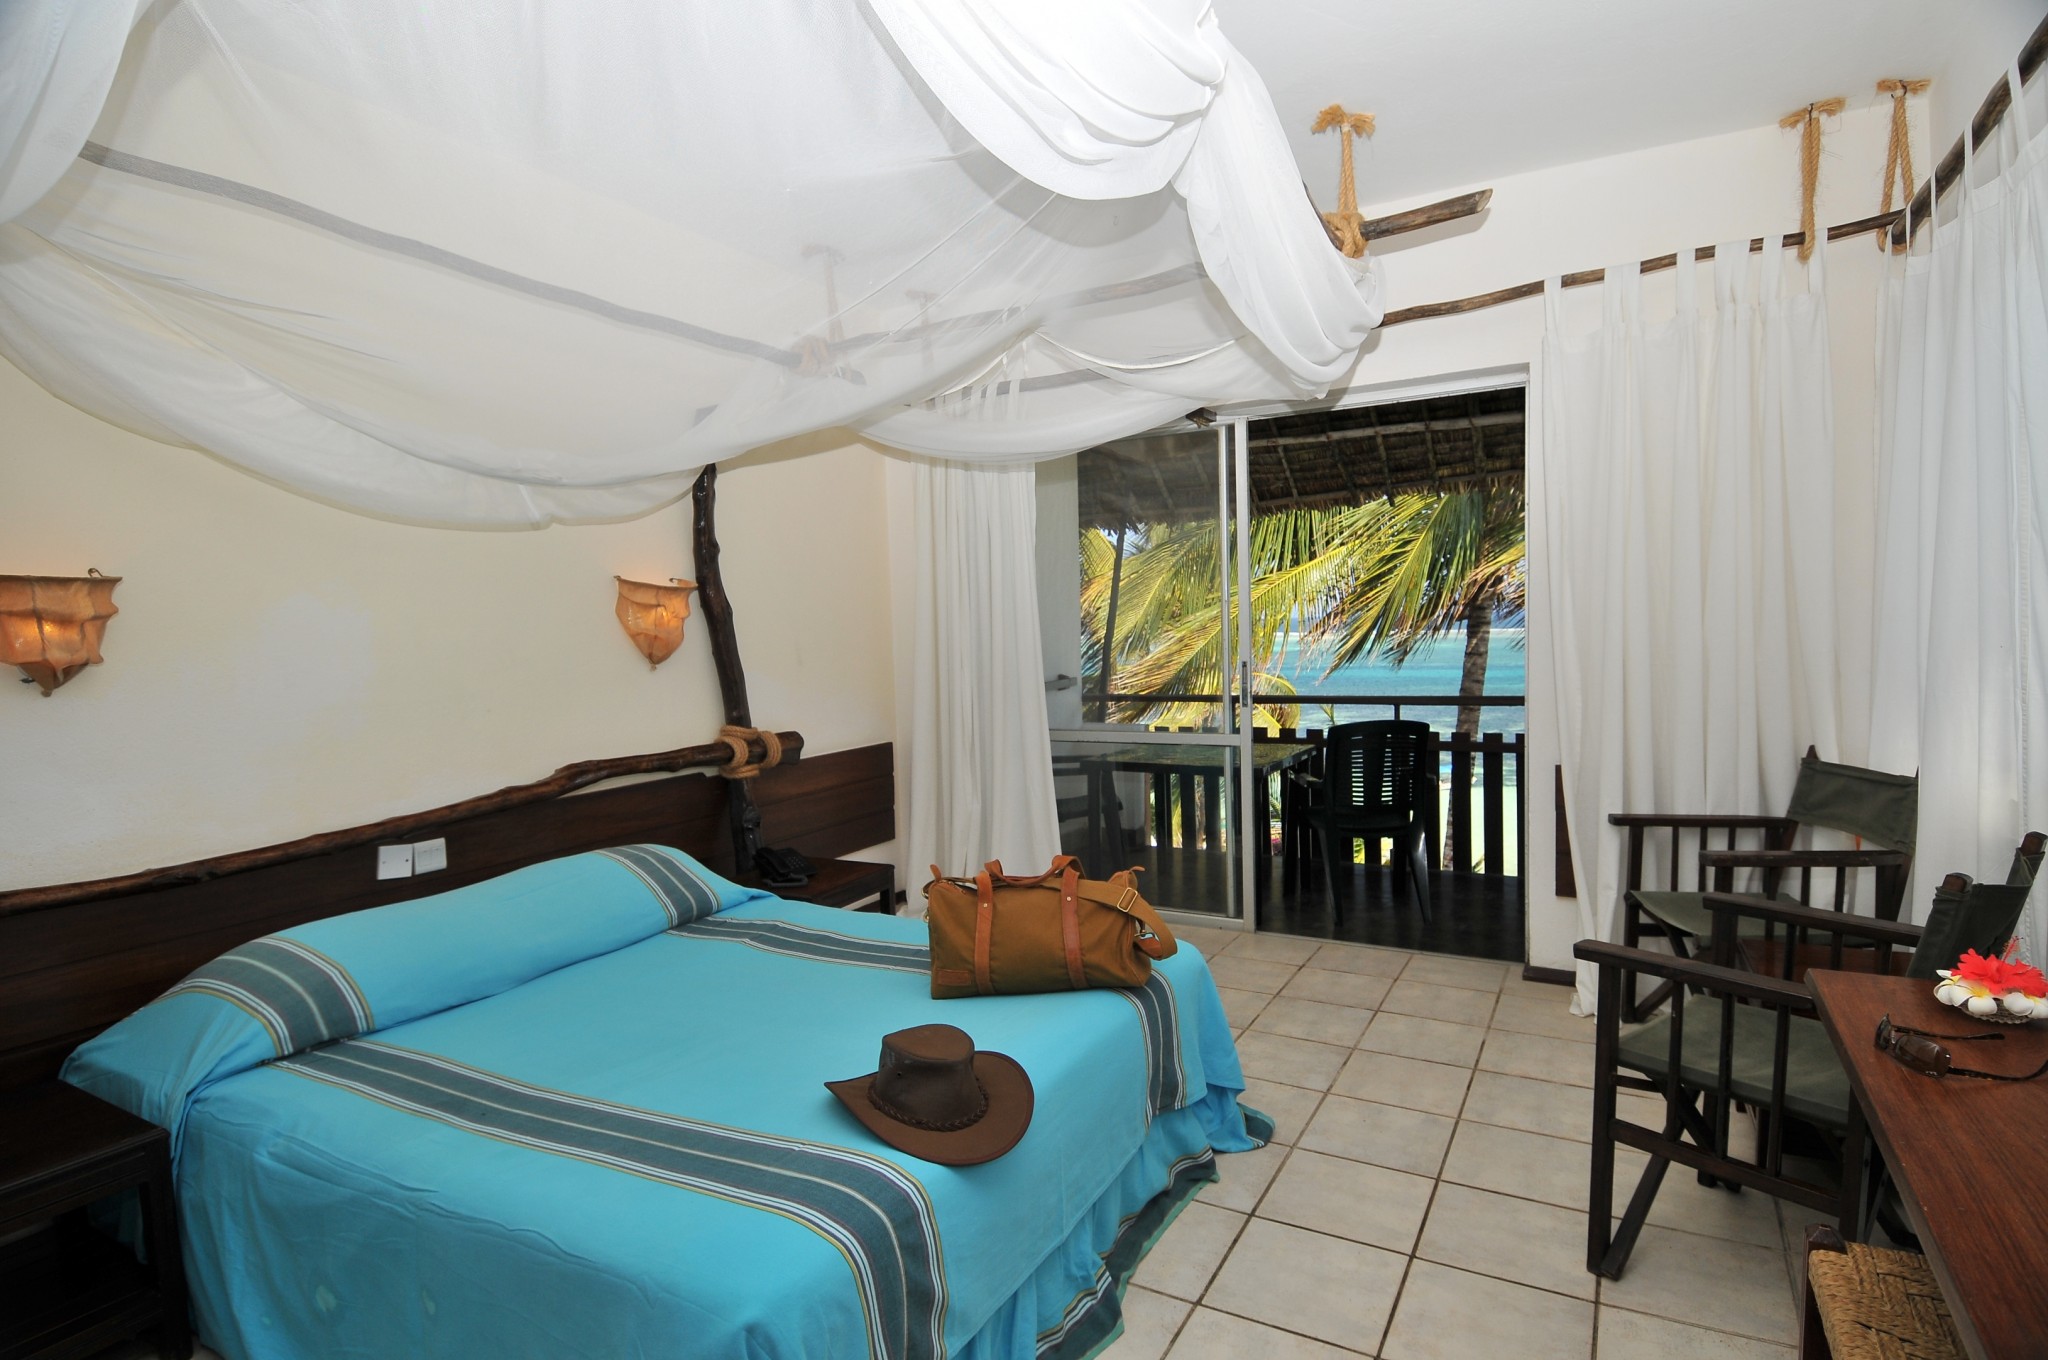 afrikanische Elemente im geschmackvoll eingerichteten Zimmer des Partnerhotels Bahari Beach Club